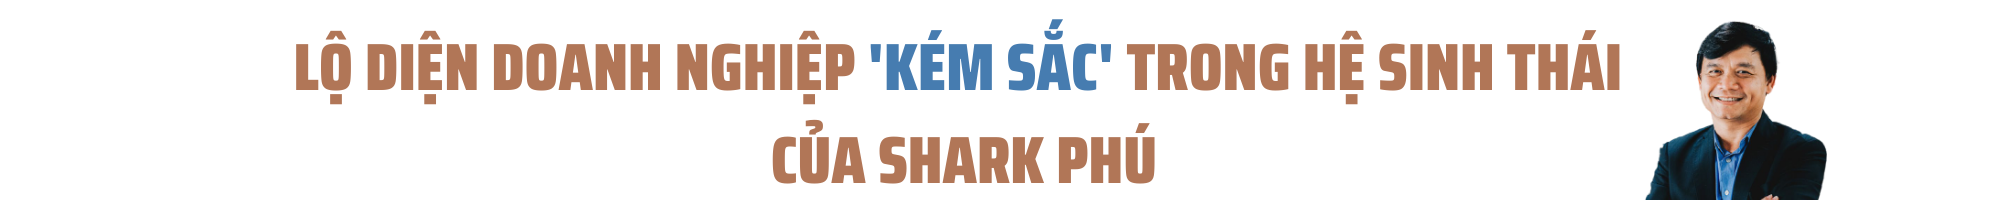 [Hồ sơ doanh nhân]: Lộ “gót chân asin” của Shark Phú - Ảnh 3.